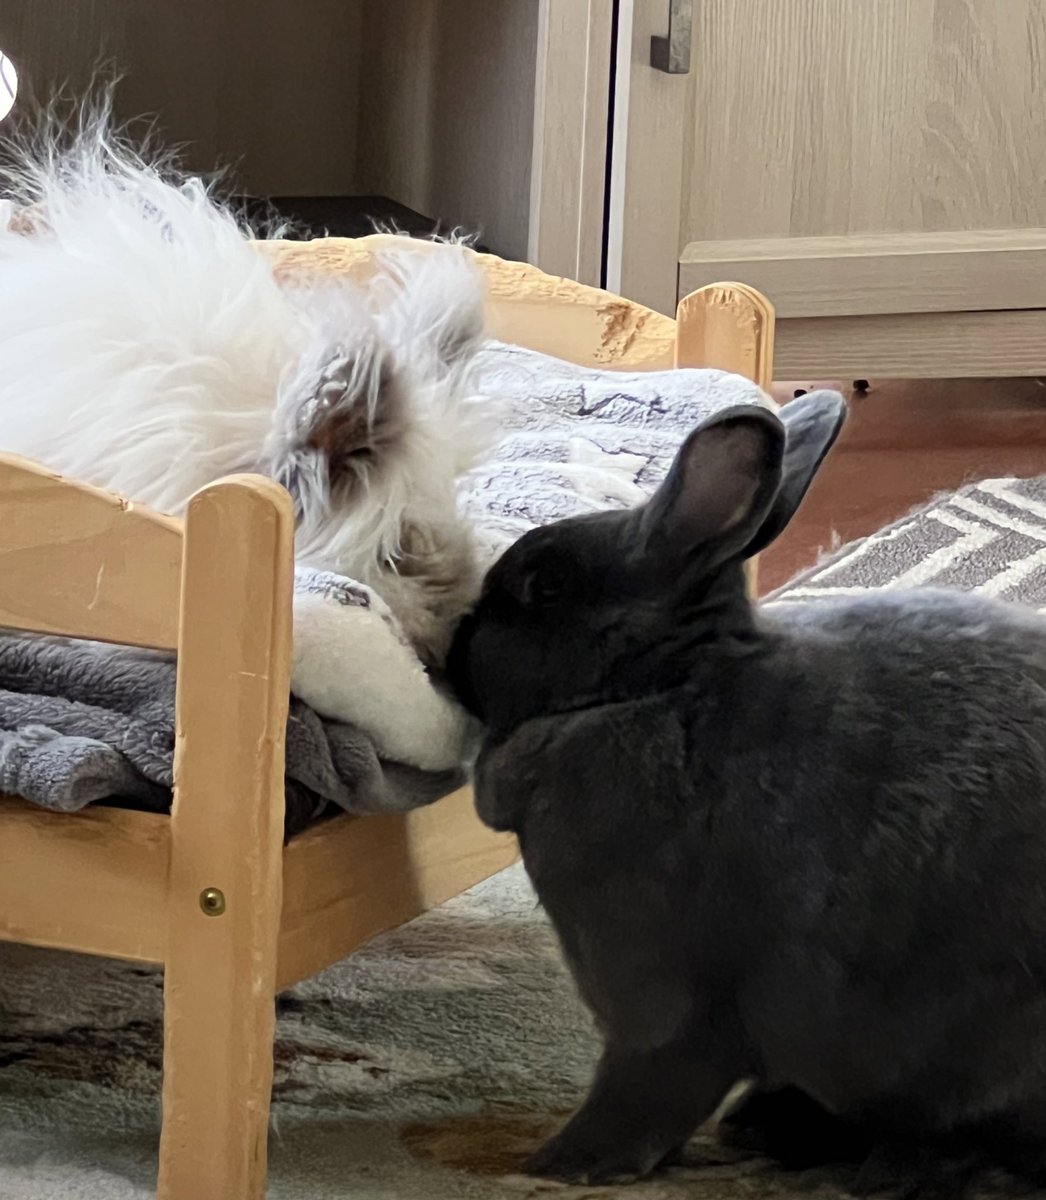 @HouseRabbit Amen!  Bunnies need a best friend